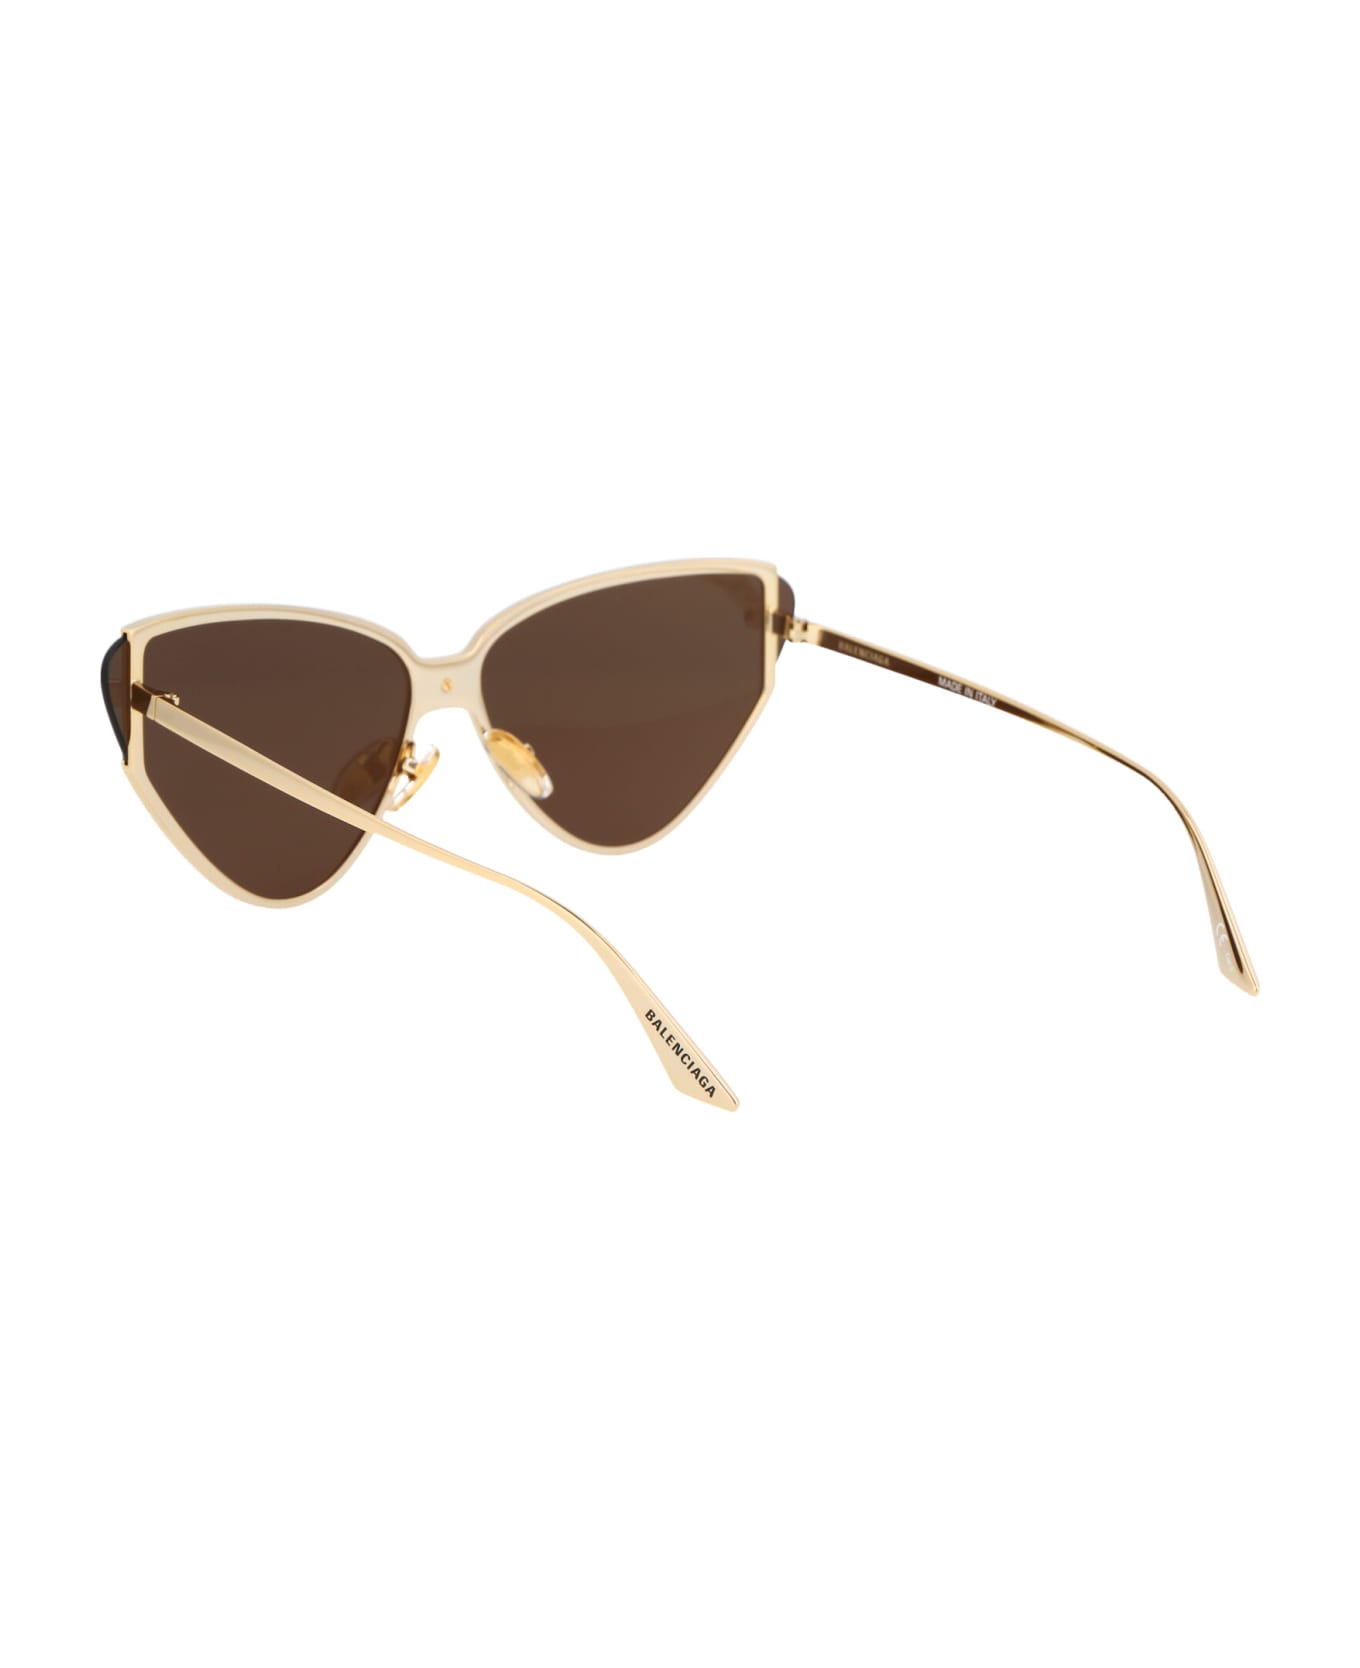 Balenciaga Eyewear Bb0191s Sunglasses - 002 GOLD GOLD BROWN